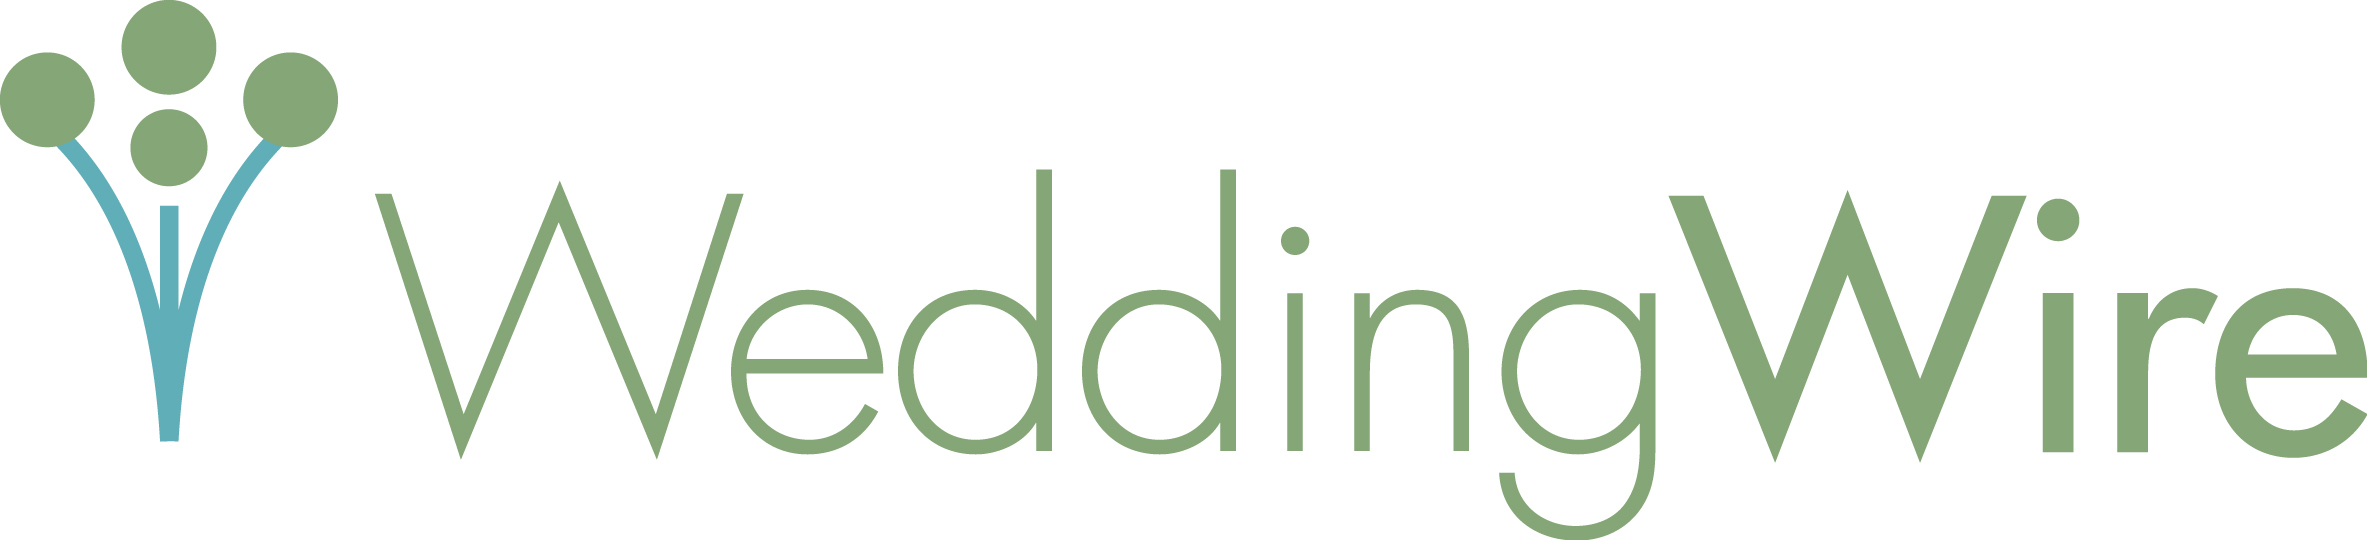 WeddingWire-Logo-Green.jpg